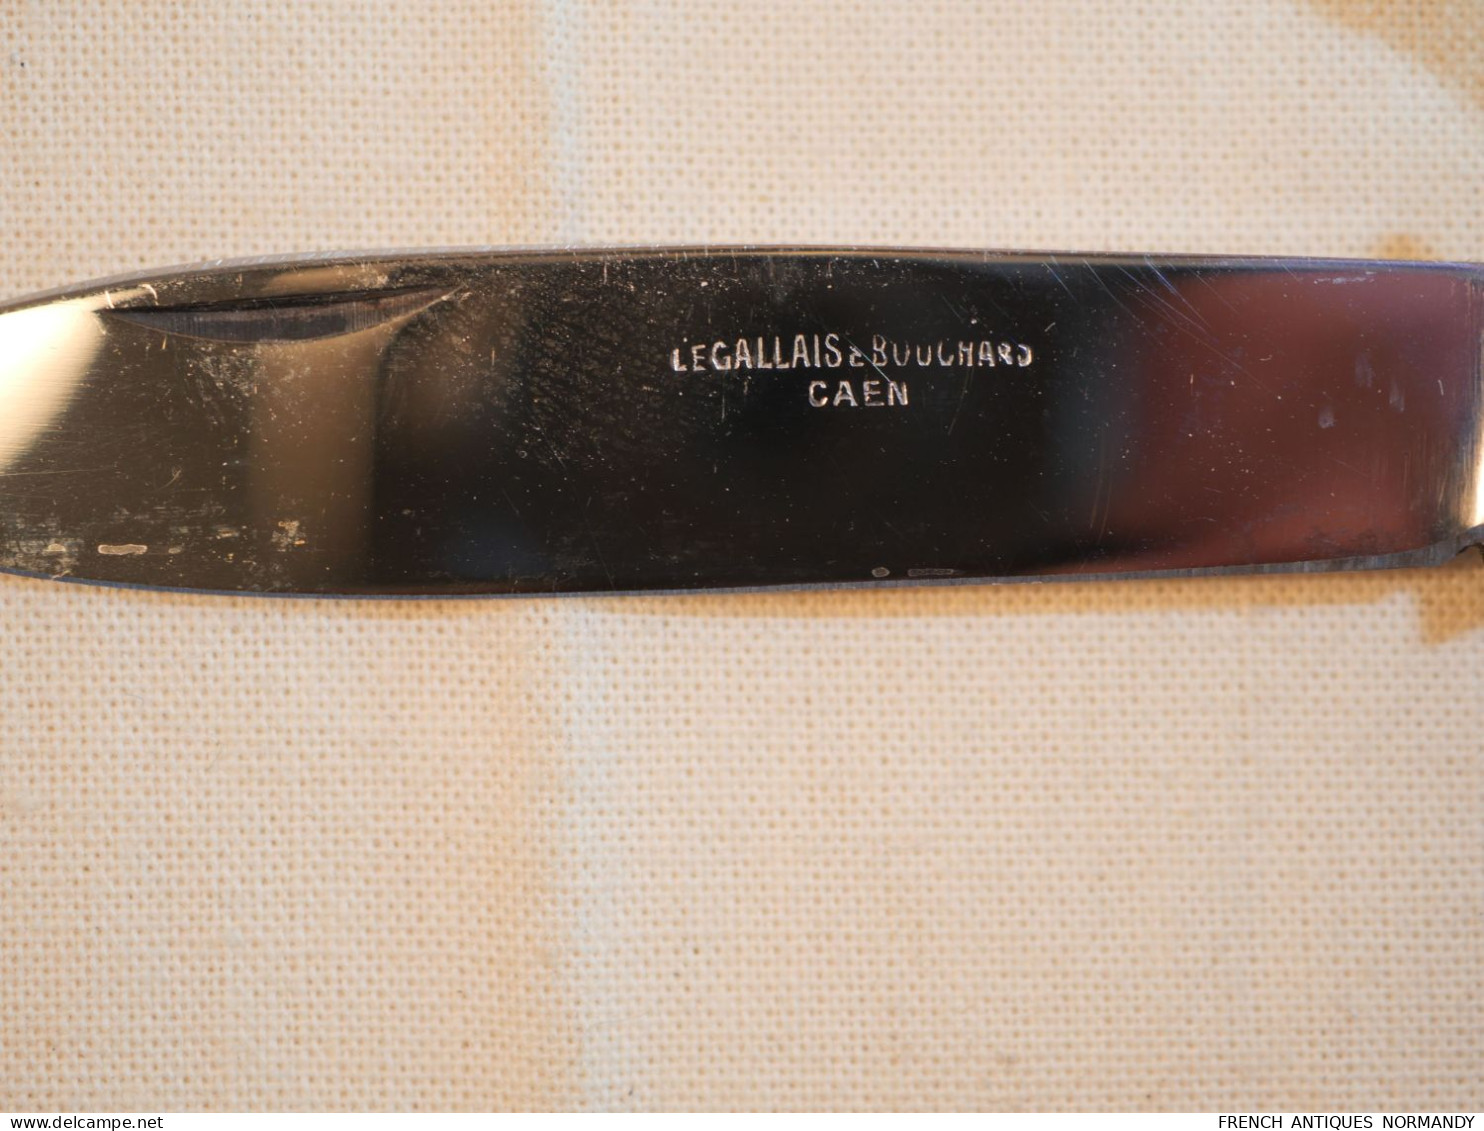 Très beau couteau pliant 6 fonctions canif - années 30/40 à plaquettes ivoirine - Legallais Bouchard   Très bel état